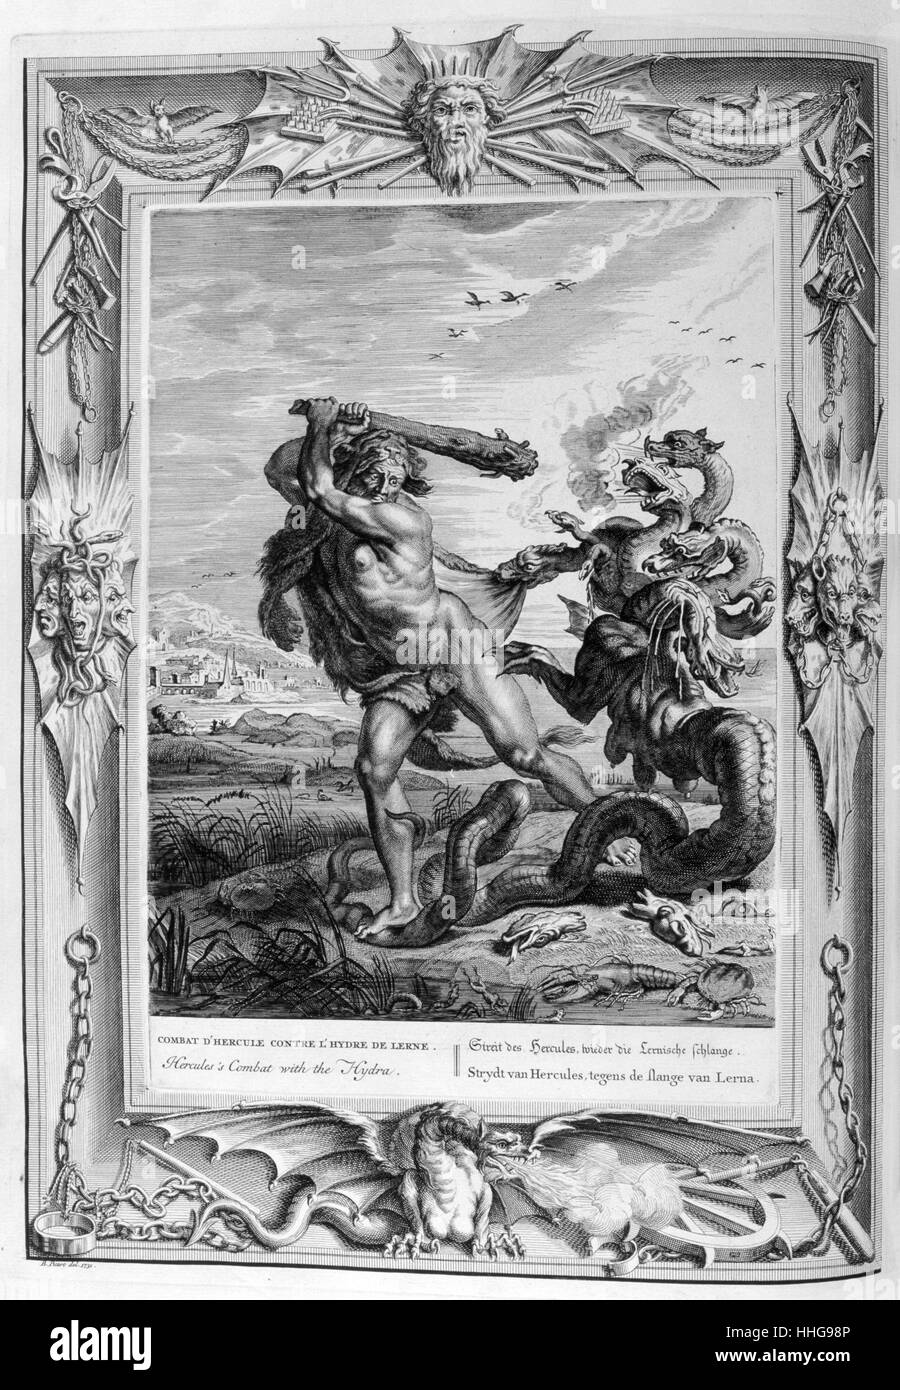 Tue l'hydre d'hercule. Gravure tirée de 'Tableaux du temple des muses" (1655) par Michel de Marolles (1600 - 1681), connu sous le nom de l'abbé de Marolles, un homme d'église français et traducteur. L'Hydre de Lerne ou serpentine, était un monstre de l'eau dans la mythologie grecque et romaine. La tanière était le lac de Lerne dans l'Argolid. Dans le mythe, le monstre est tué par Héraclès, à l'aide de l'épée et le feu, comme la deuxième de ses douze travaux. Banque D'Images